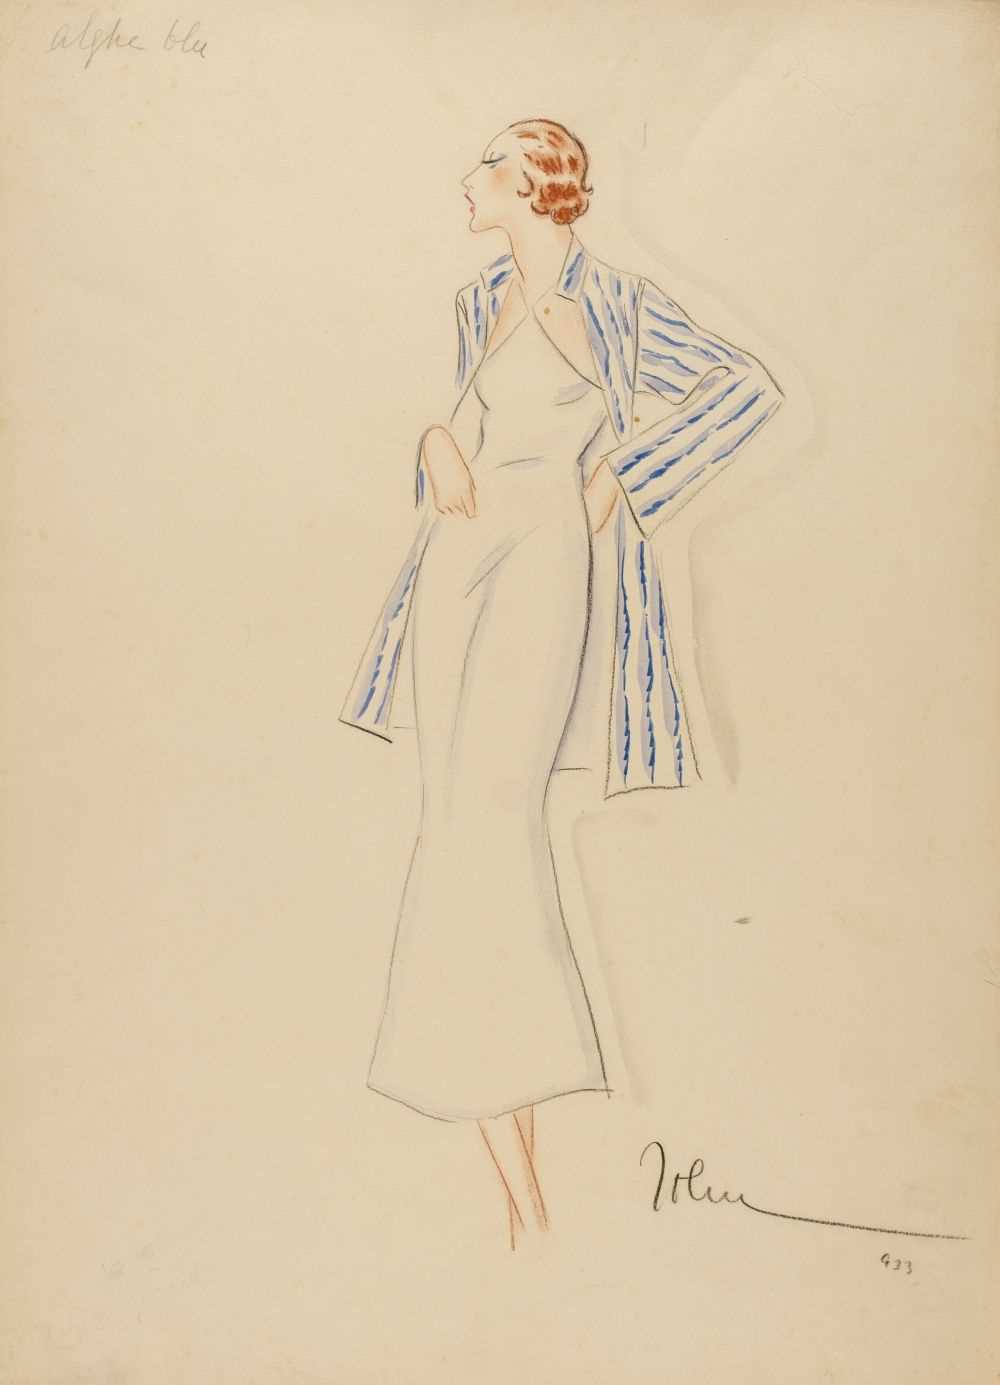 Lot 291 - Guida (John, 1896-1965). Fashion illustration, c. 1930